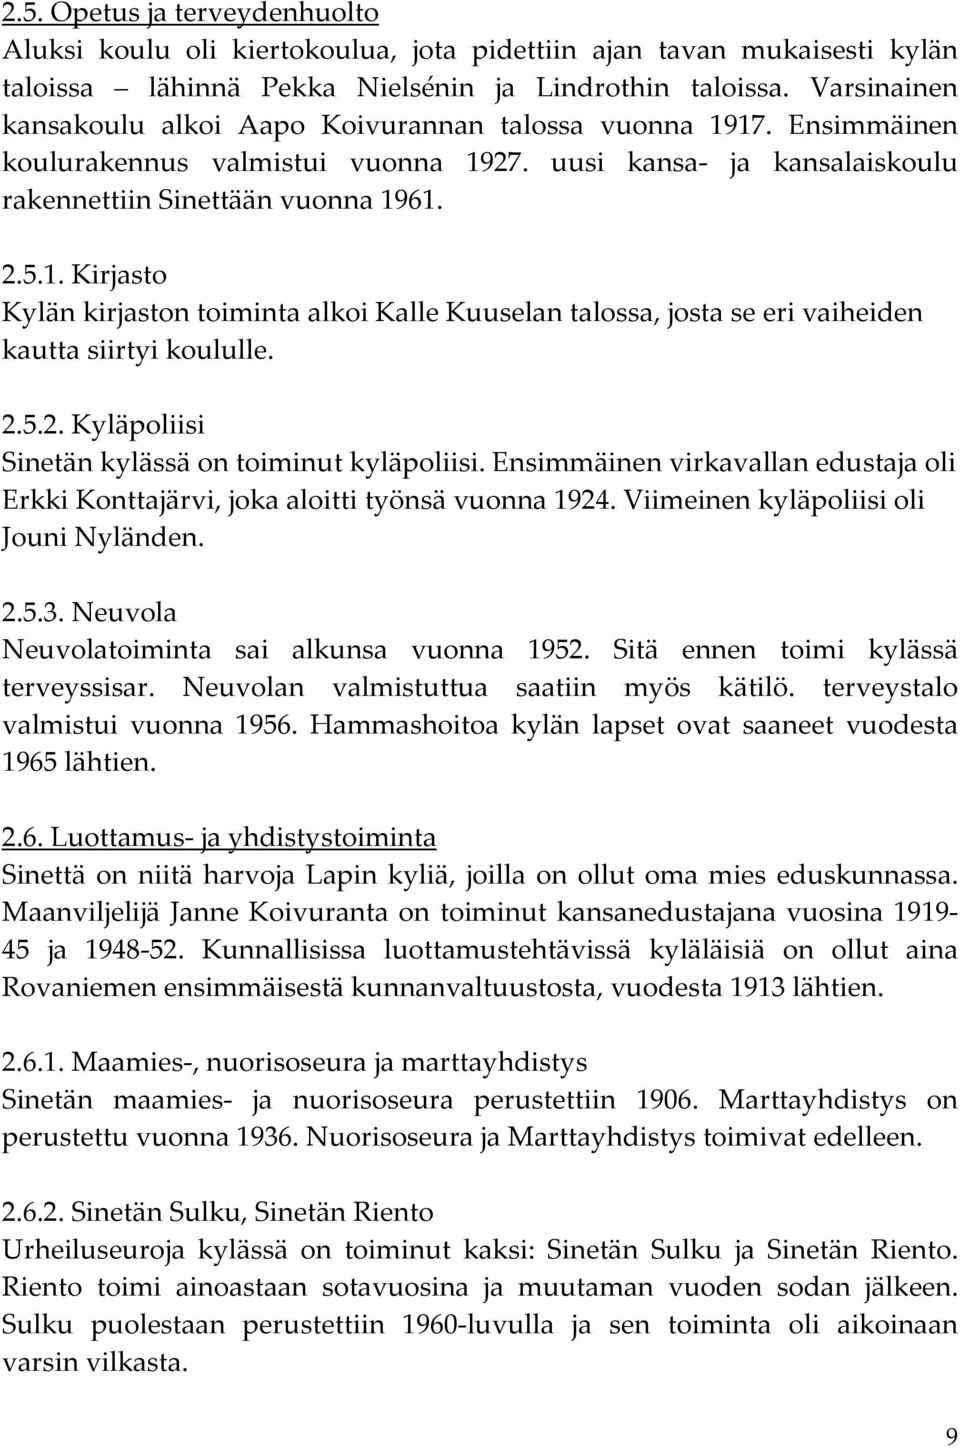 2.5.2. Kyläpoliisi Sinetän kylässä on toiminut kyläpoliisi. Ensimmäinen virkavallan edustaja oli Erkki Konttajärvi, joka aloitti työnsä vuonna 1924. Viimeinen kyläpoliisi oli Jouni Nyländen. 2.5.3.